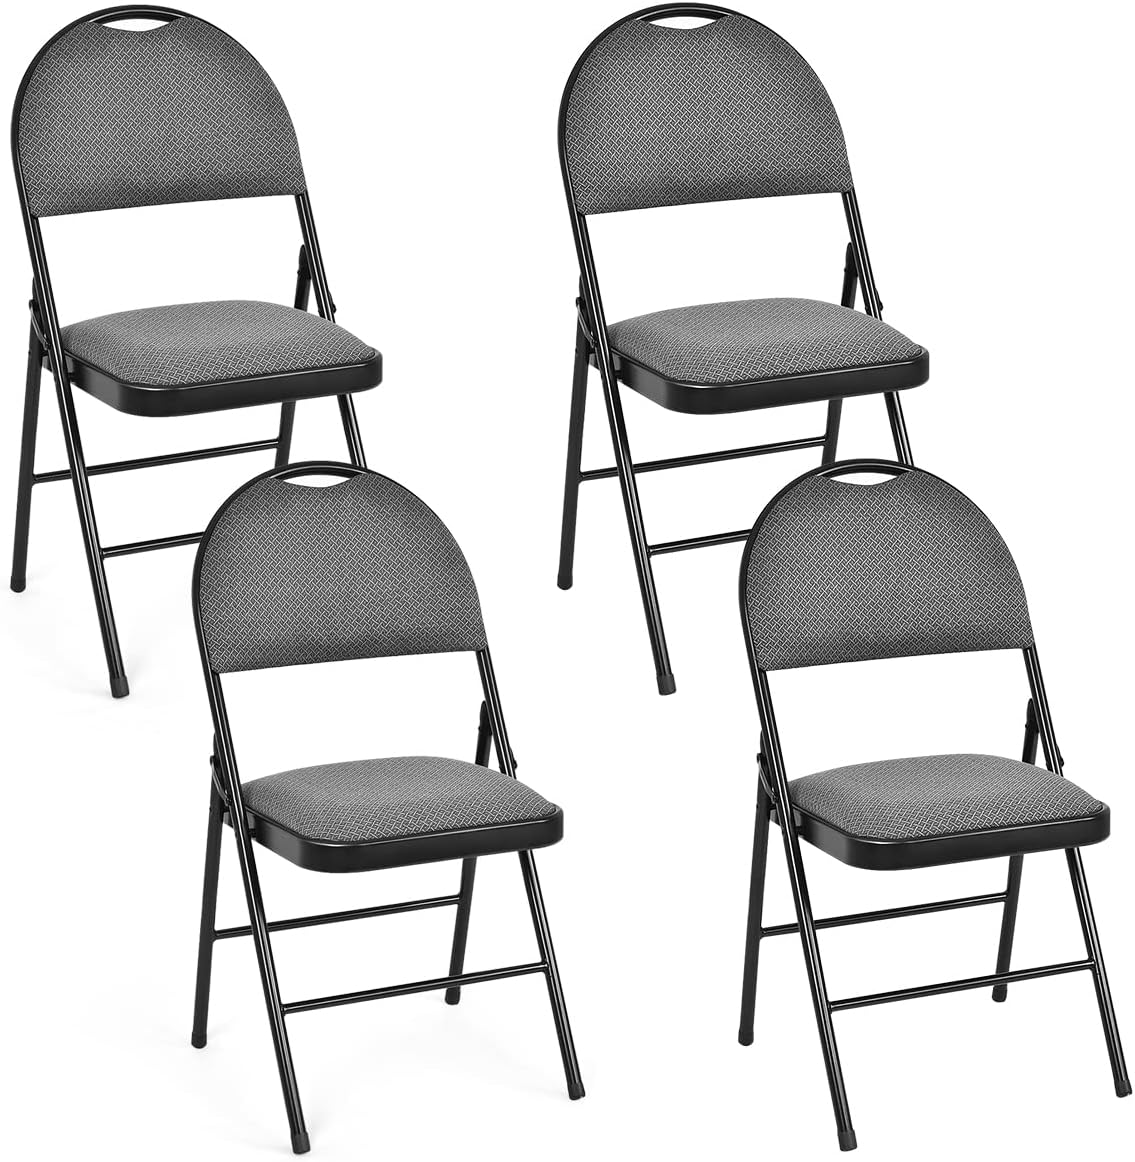 6 PCS Folding Chairs Set Portable Backrest Chair